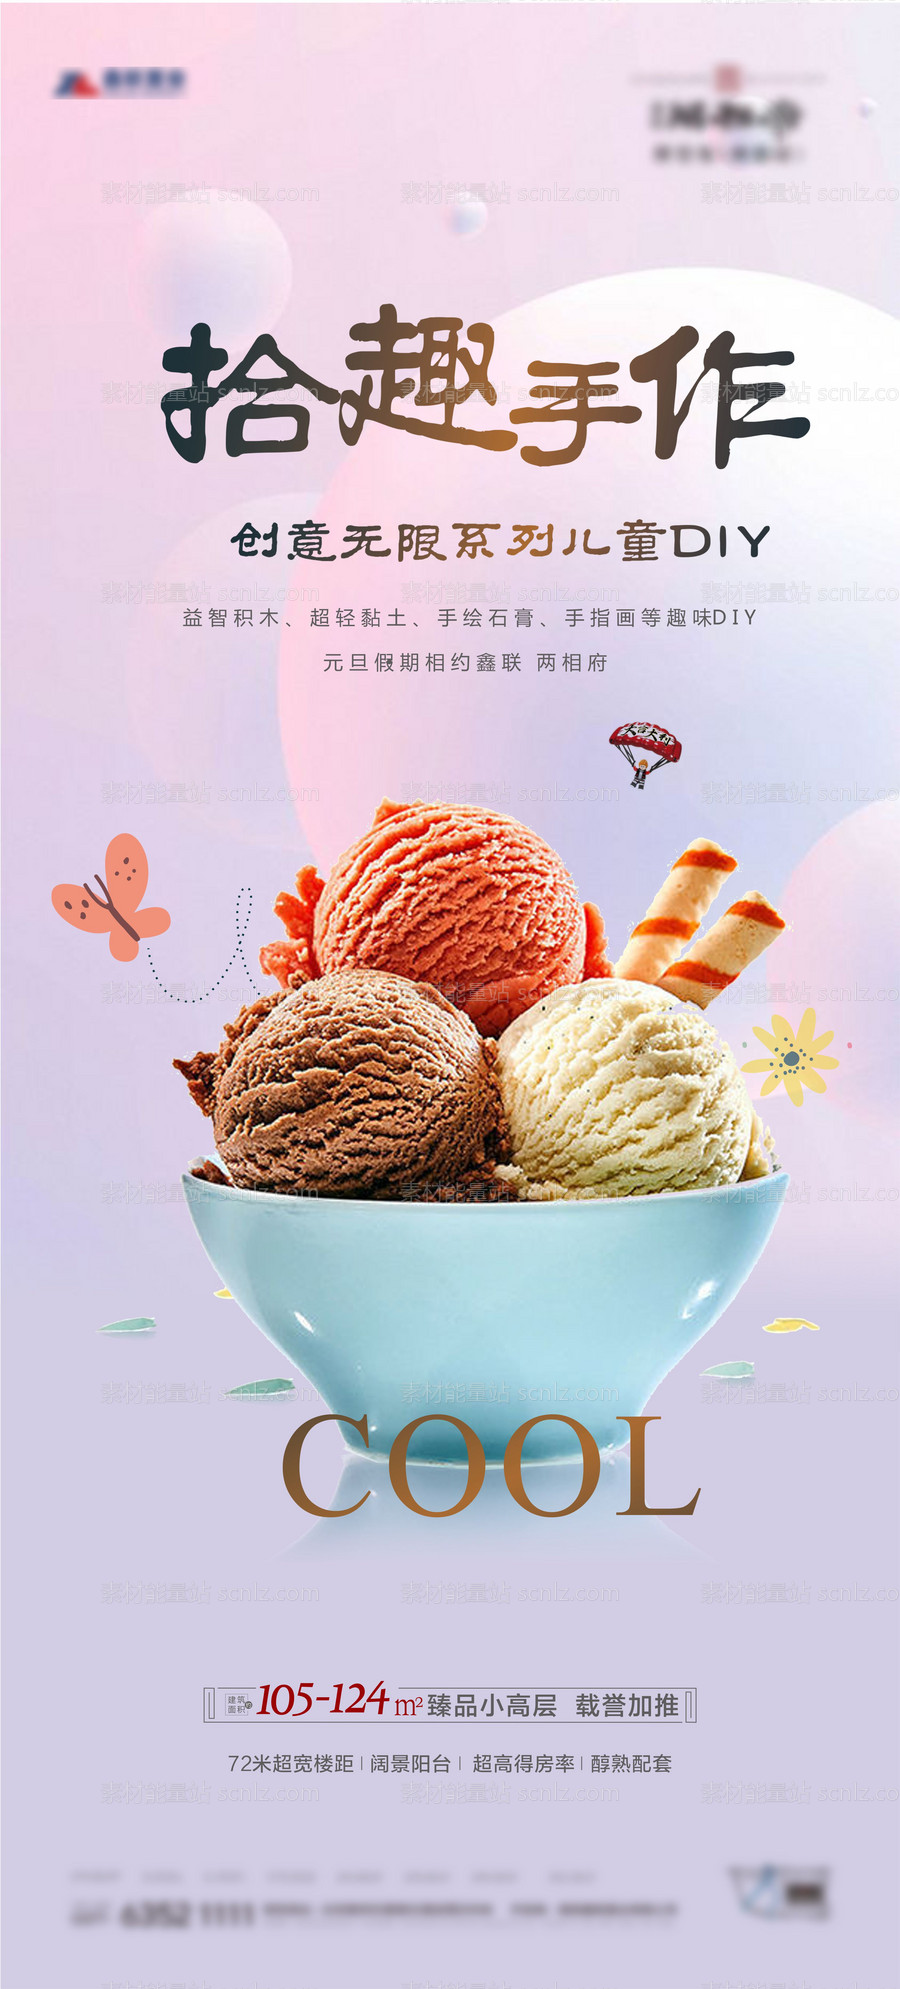 素材能量站-地产冰淇淋DIY活动海报